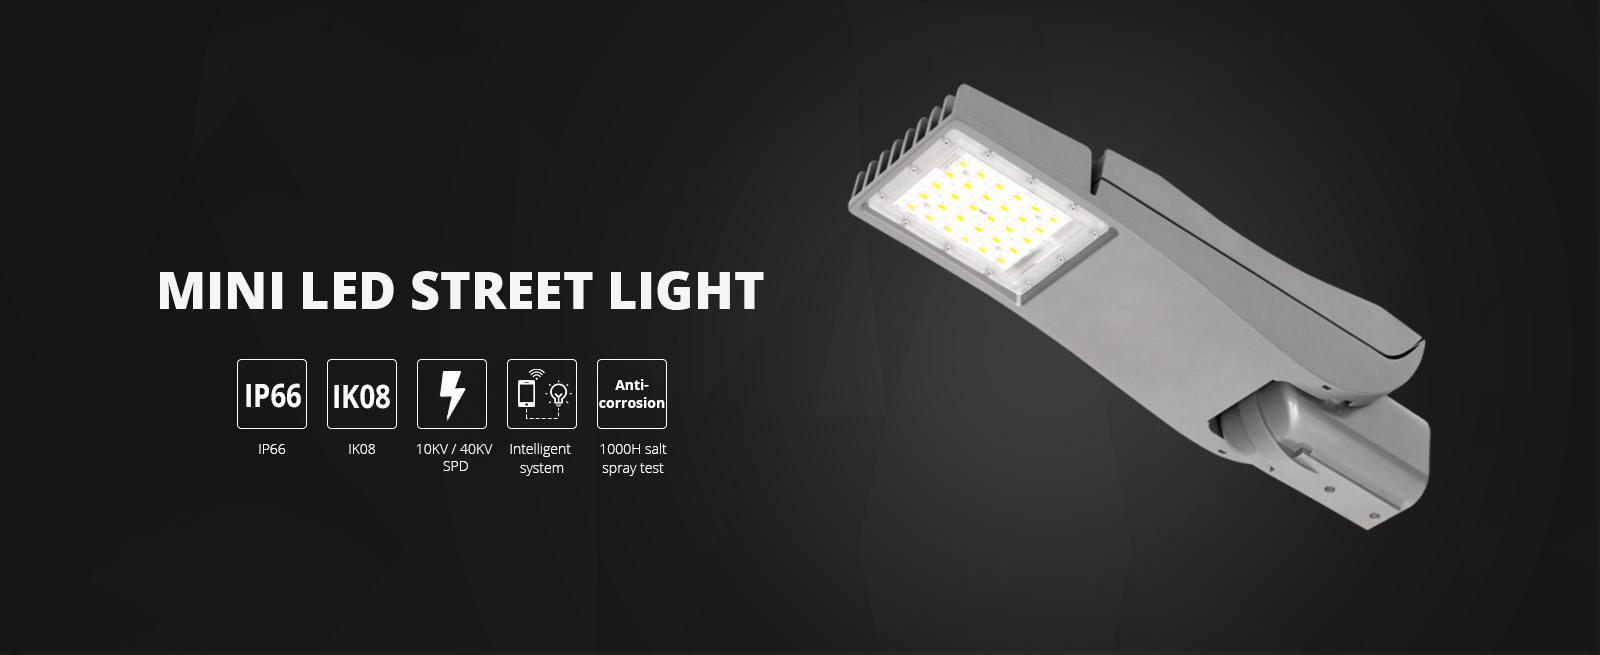 Mini LED Street Light